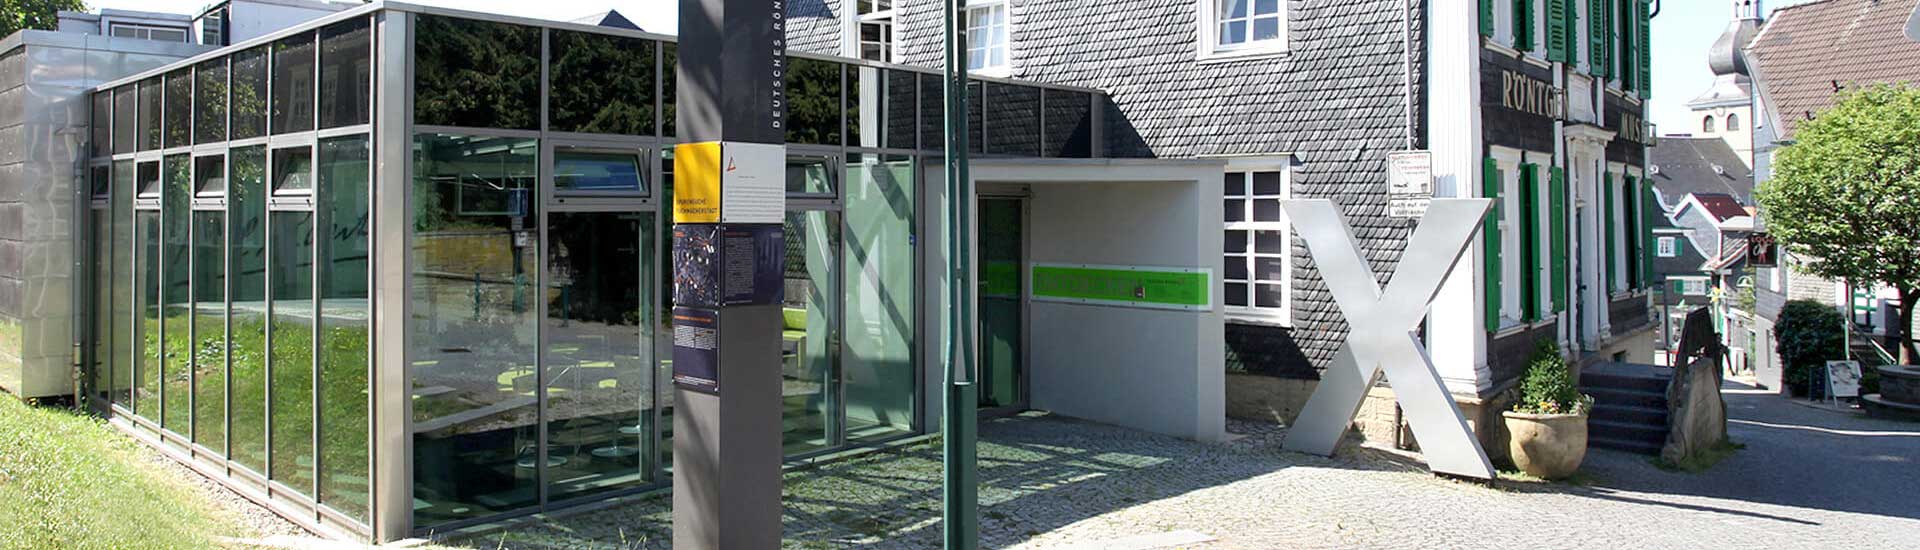 You are currently viewing Das neue Deutsche Röntgen-Museum in Remscheid Lennep